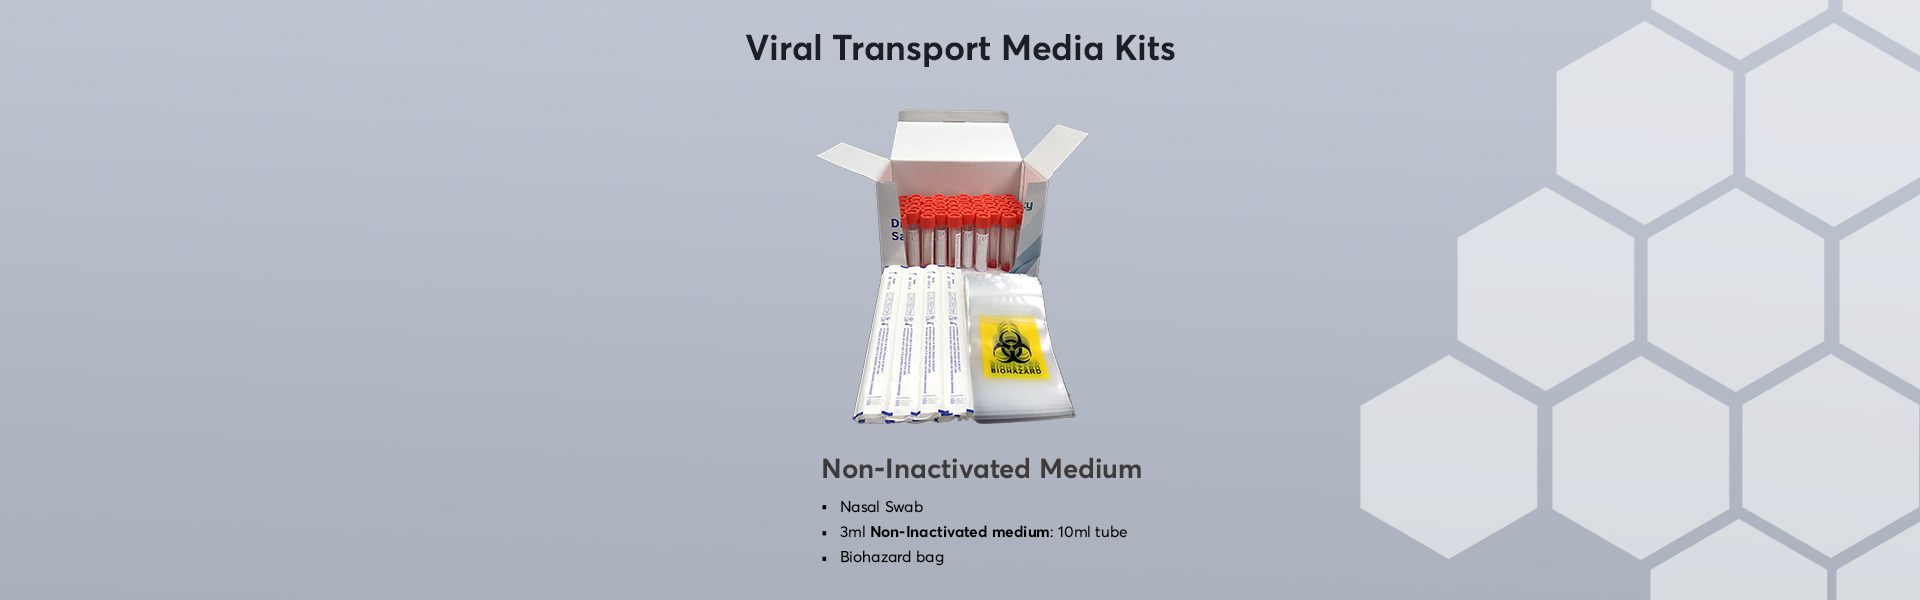 Viral-Transport-Media-Kits